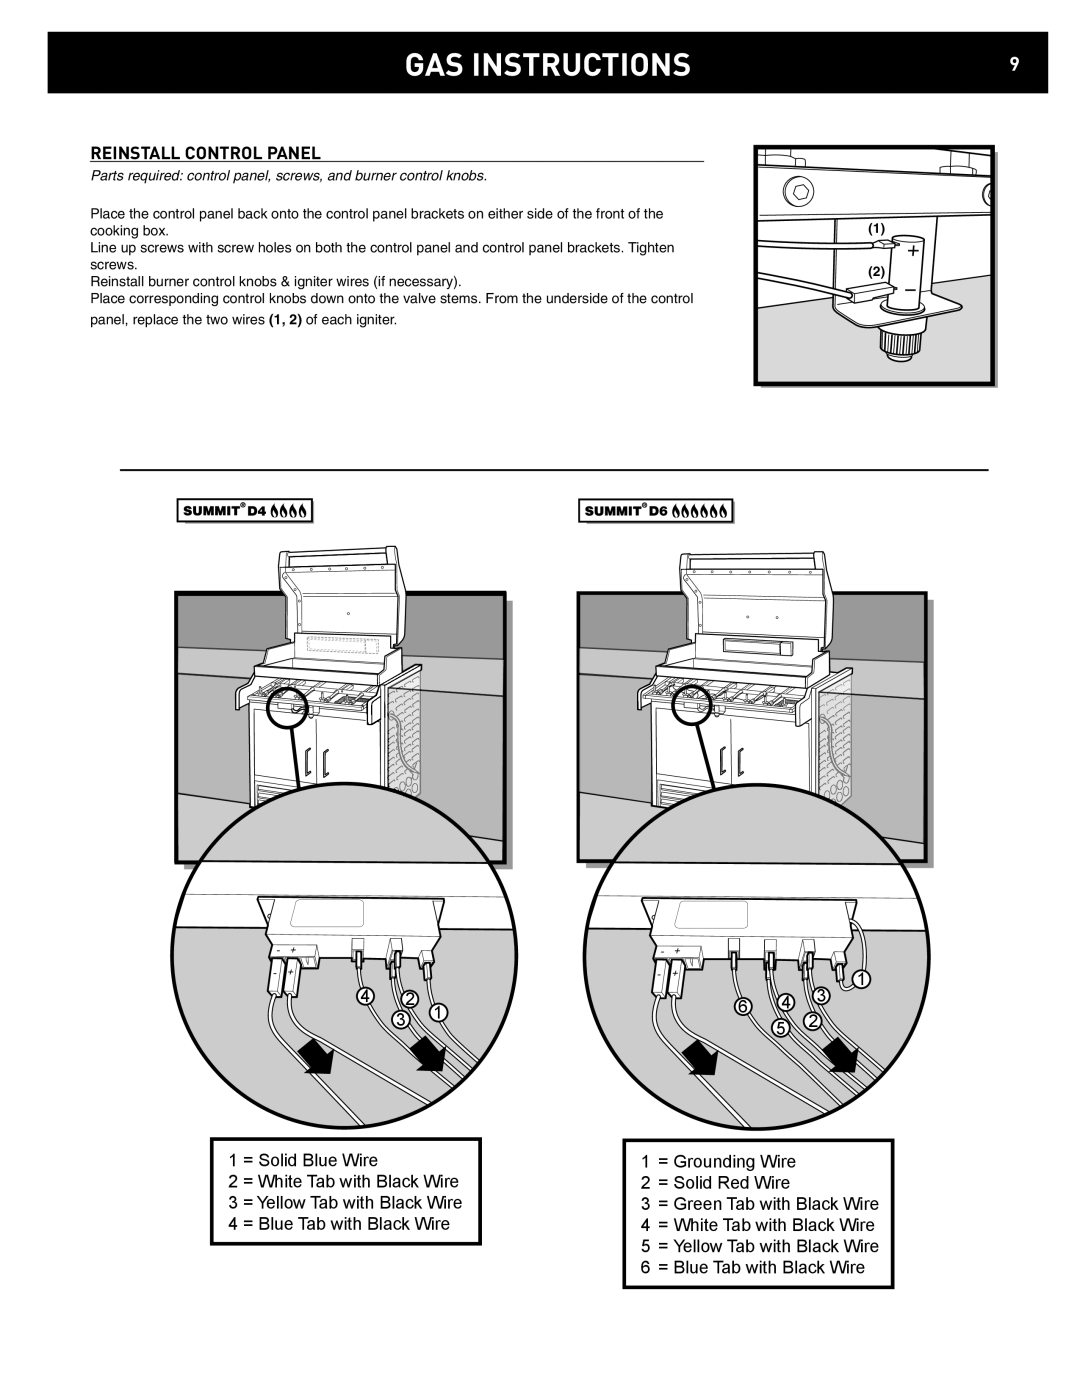 Weber D4, D6 manual Gas Instructions, Reinstall Control Panel 